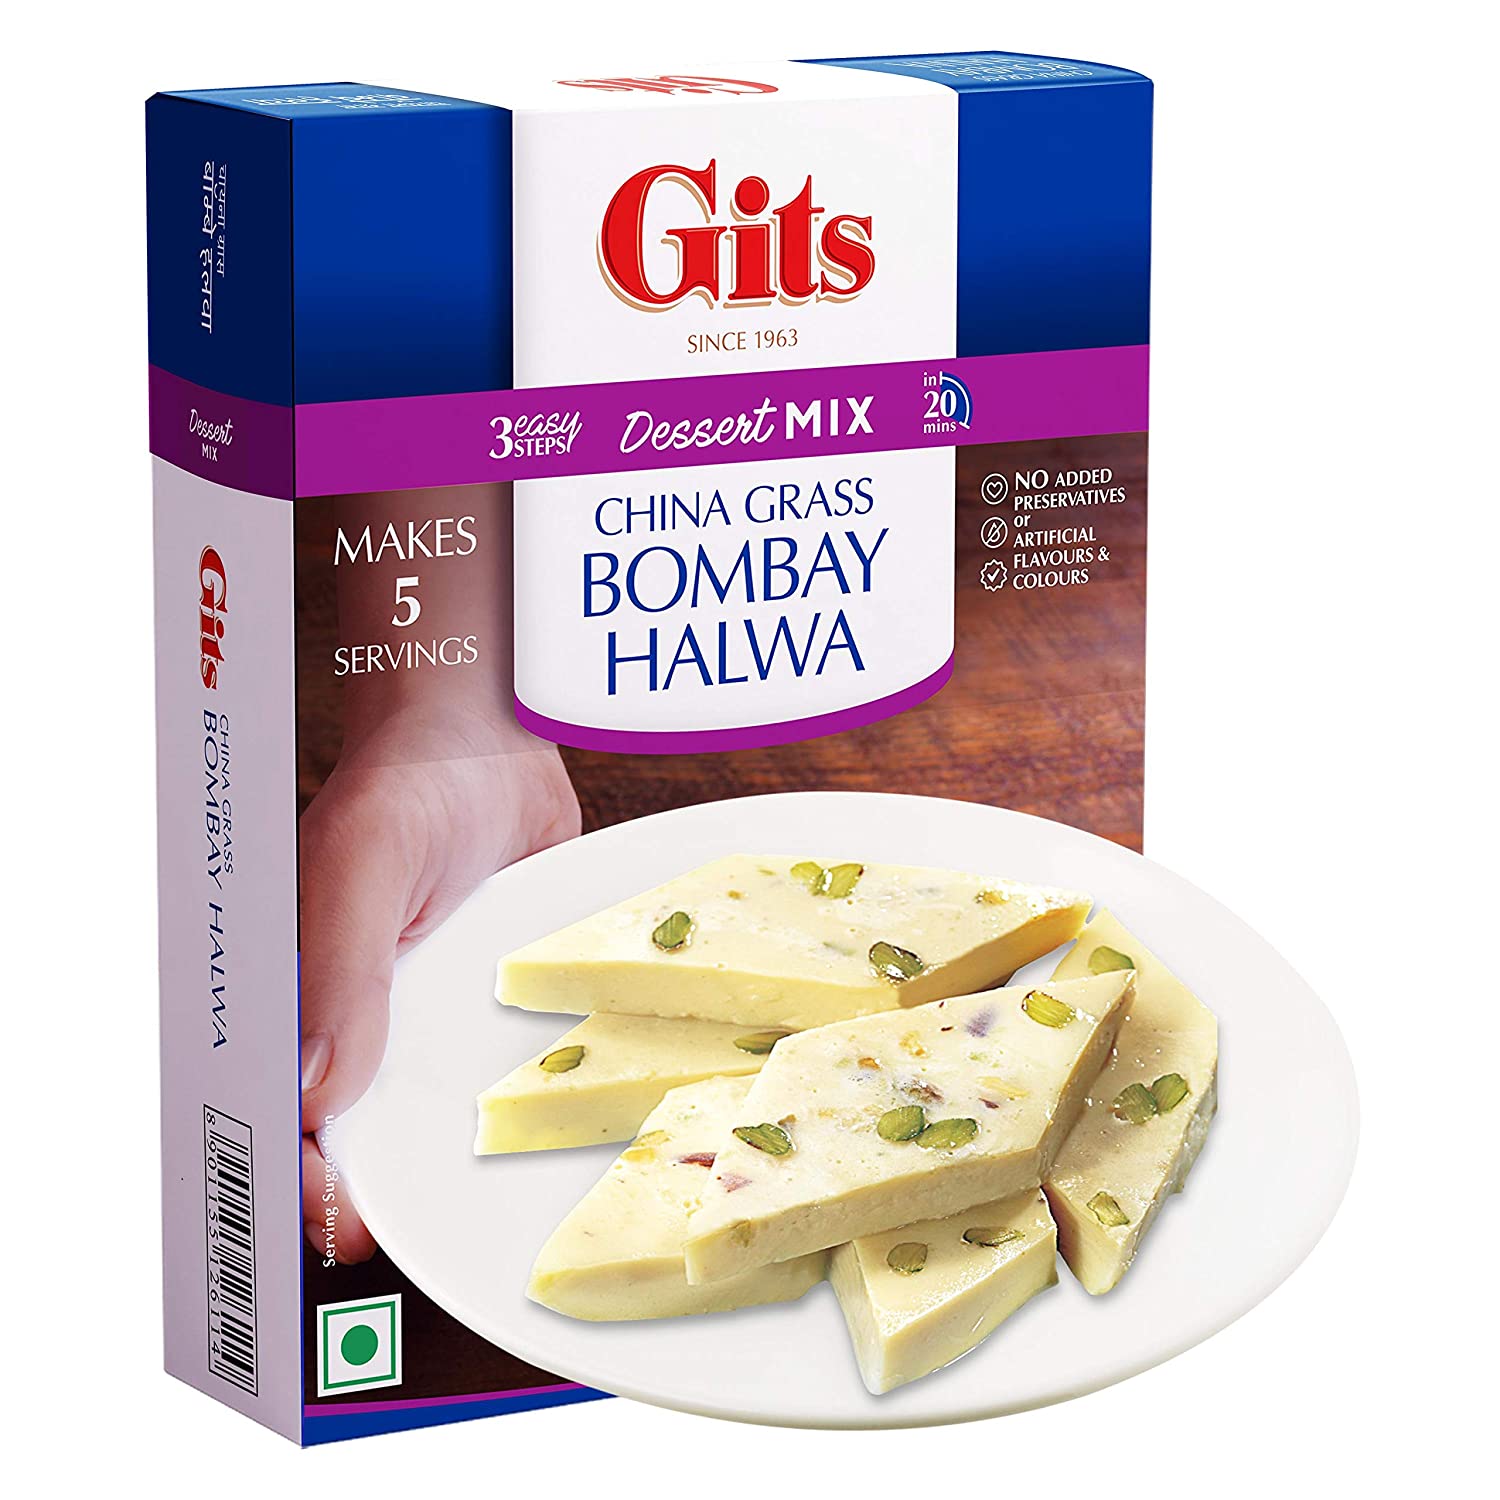 Gits Bombay Halwa Dessert Mix Image